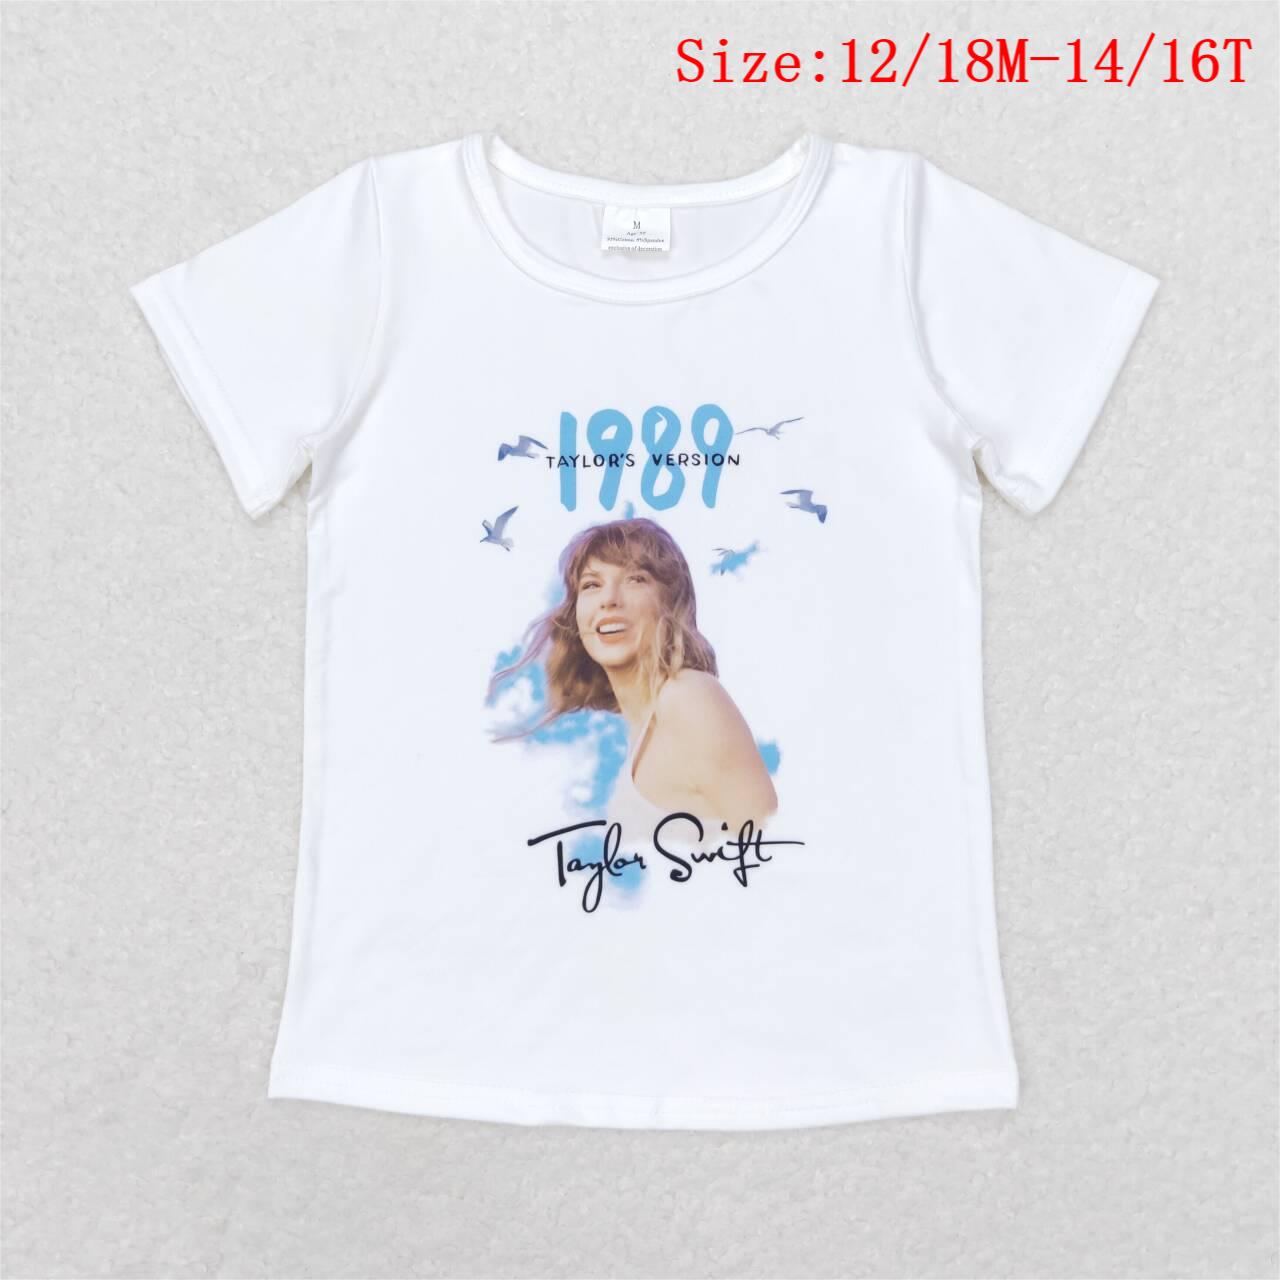 GT0531  Singer Swiftie 1989 Print Girls Summer Tee Shirts Top